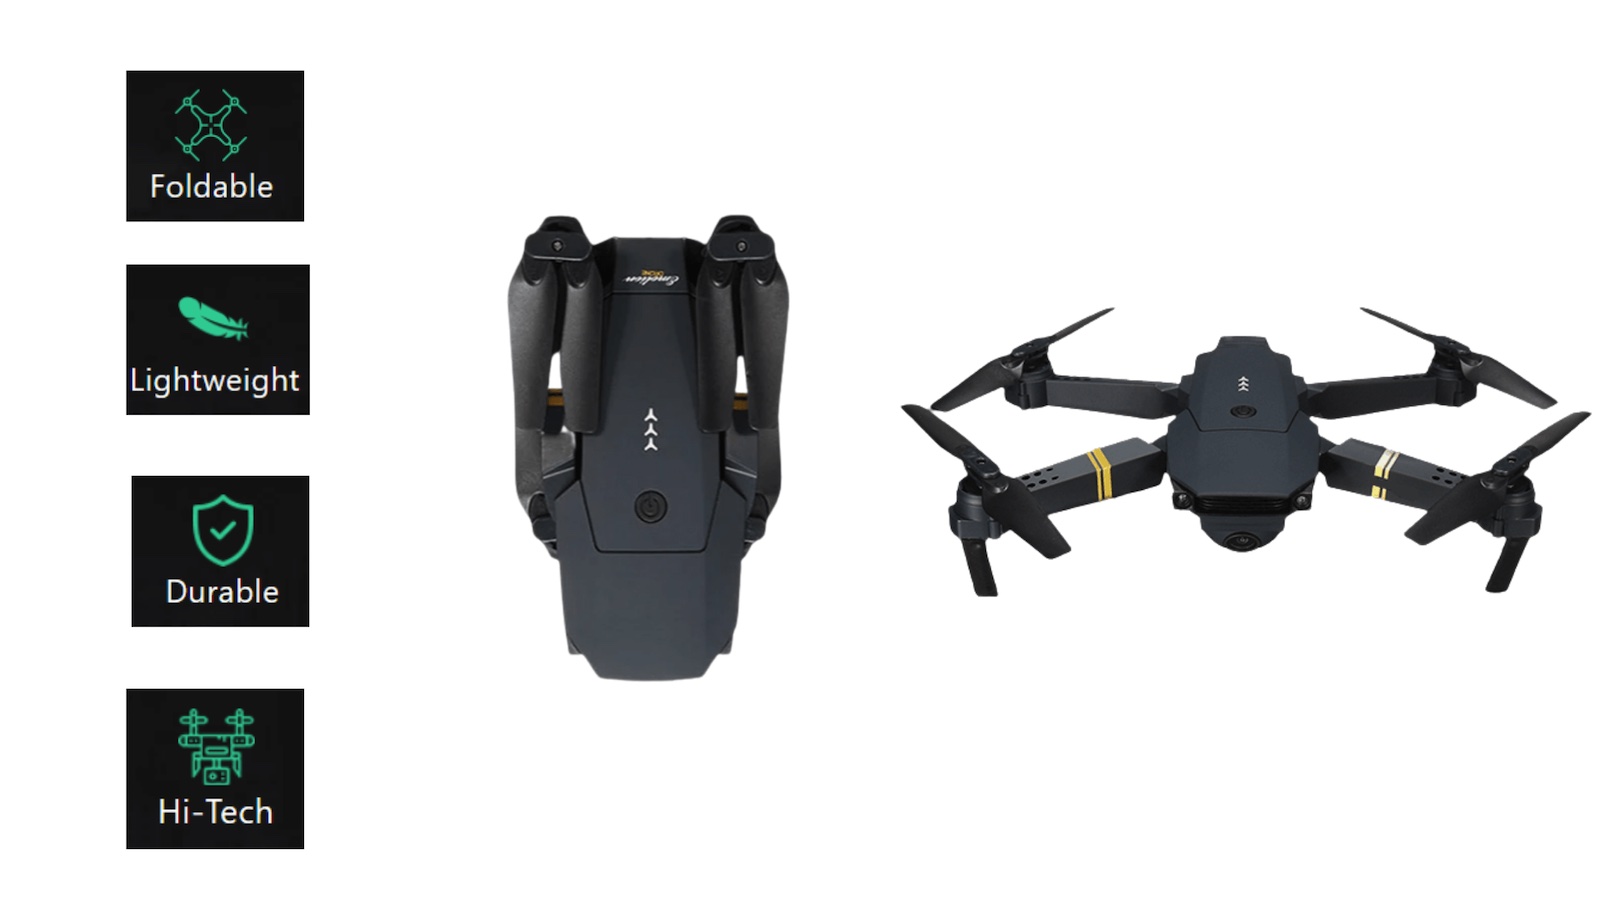 quadair drone video